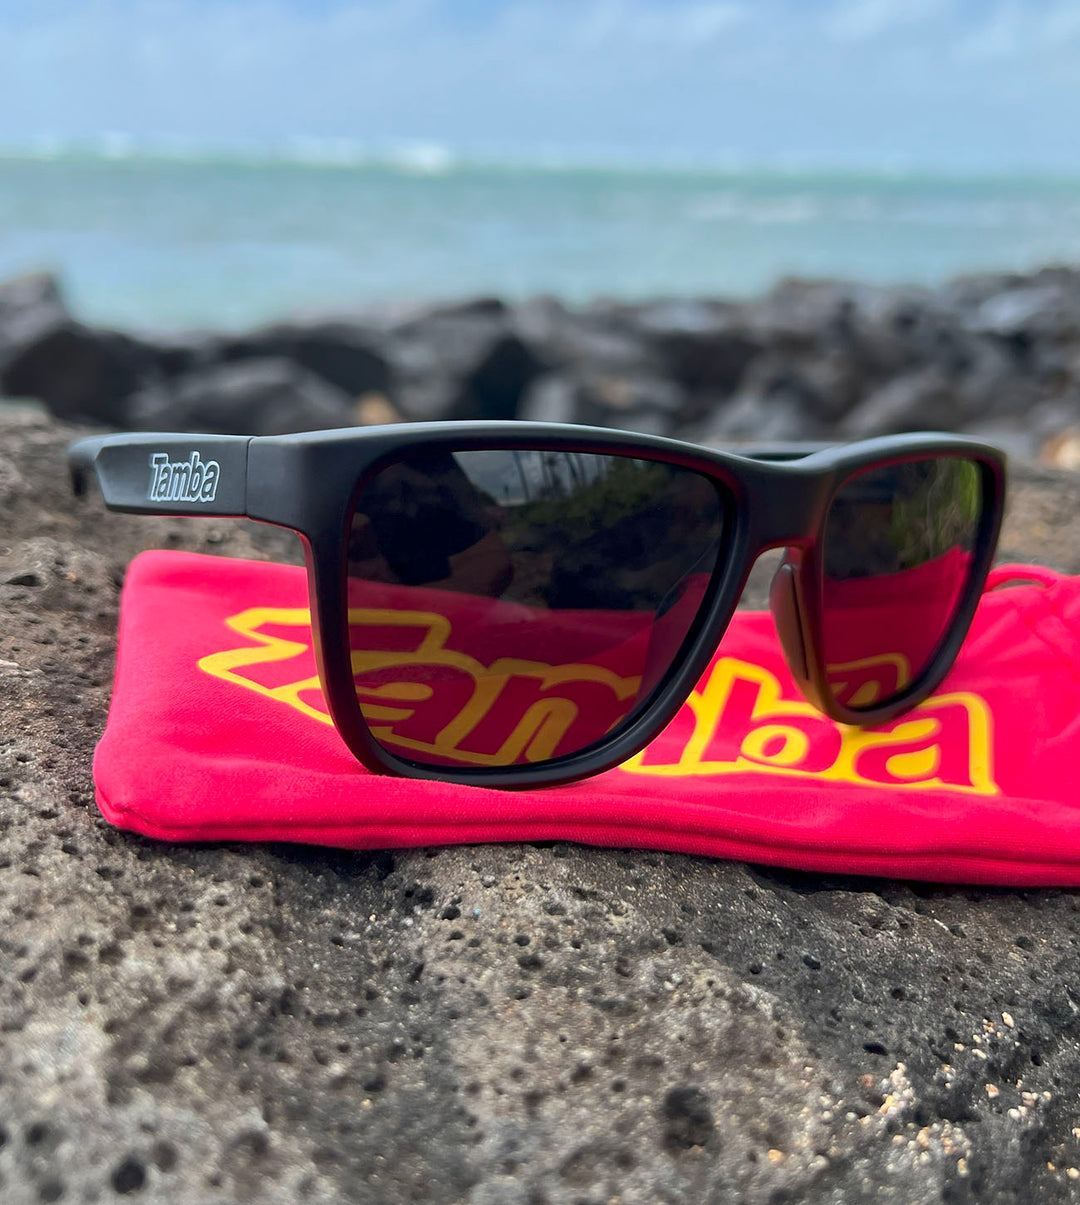 Tamba Sunglasses (Matte Black) sitting on a rock by a beach.